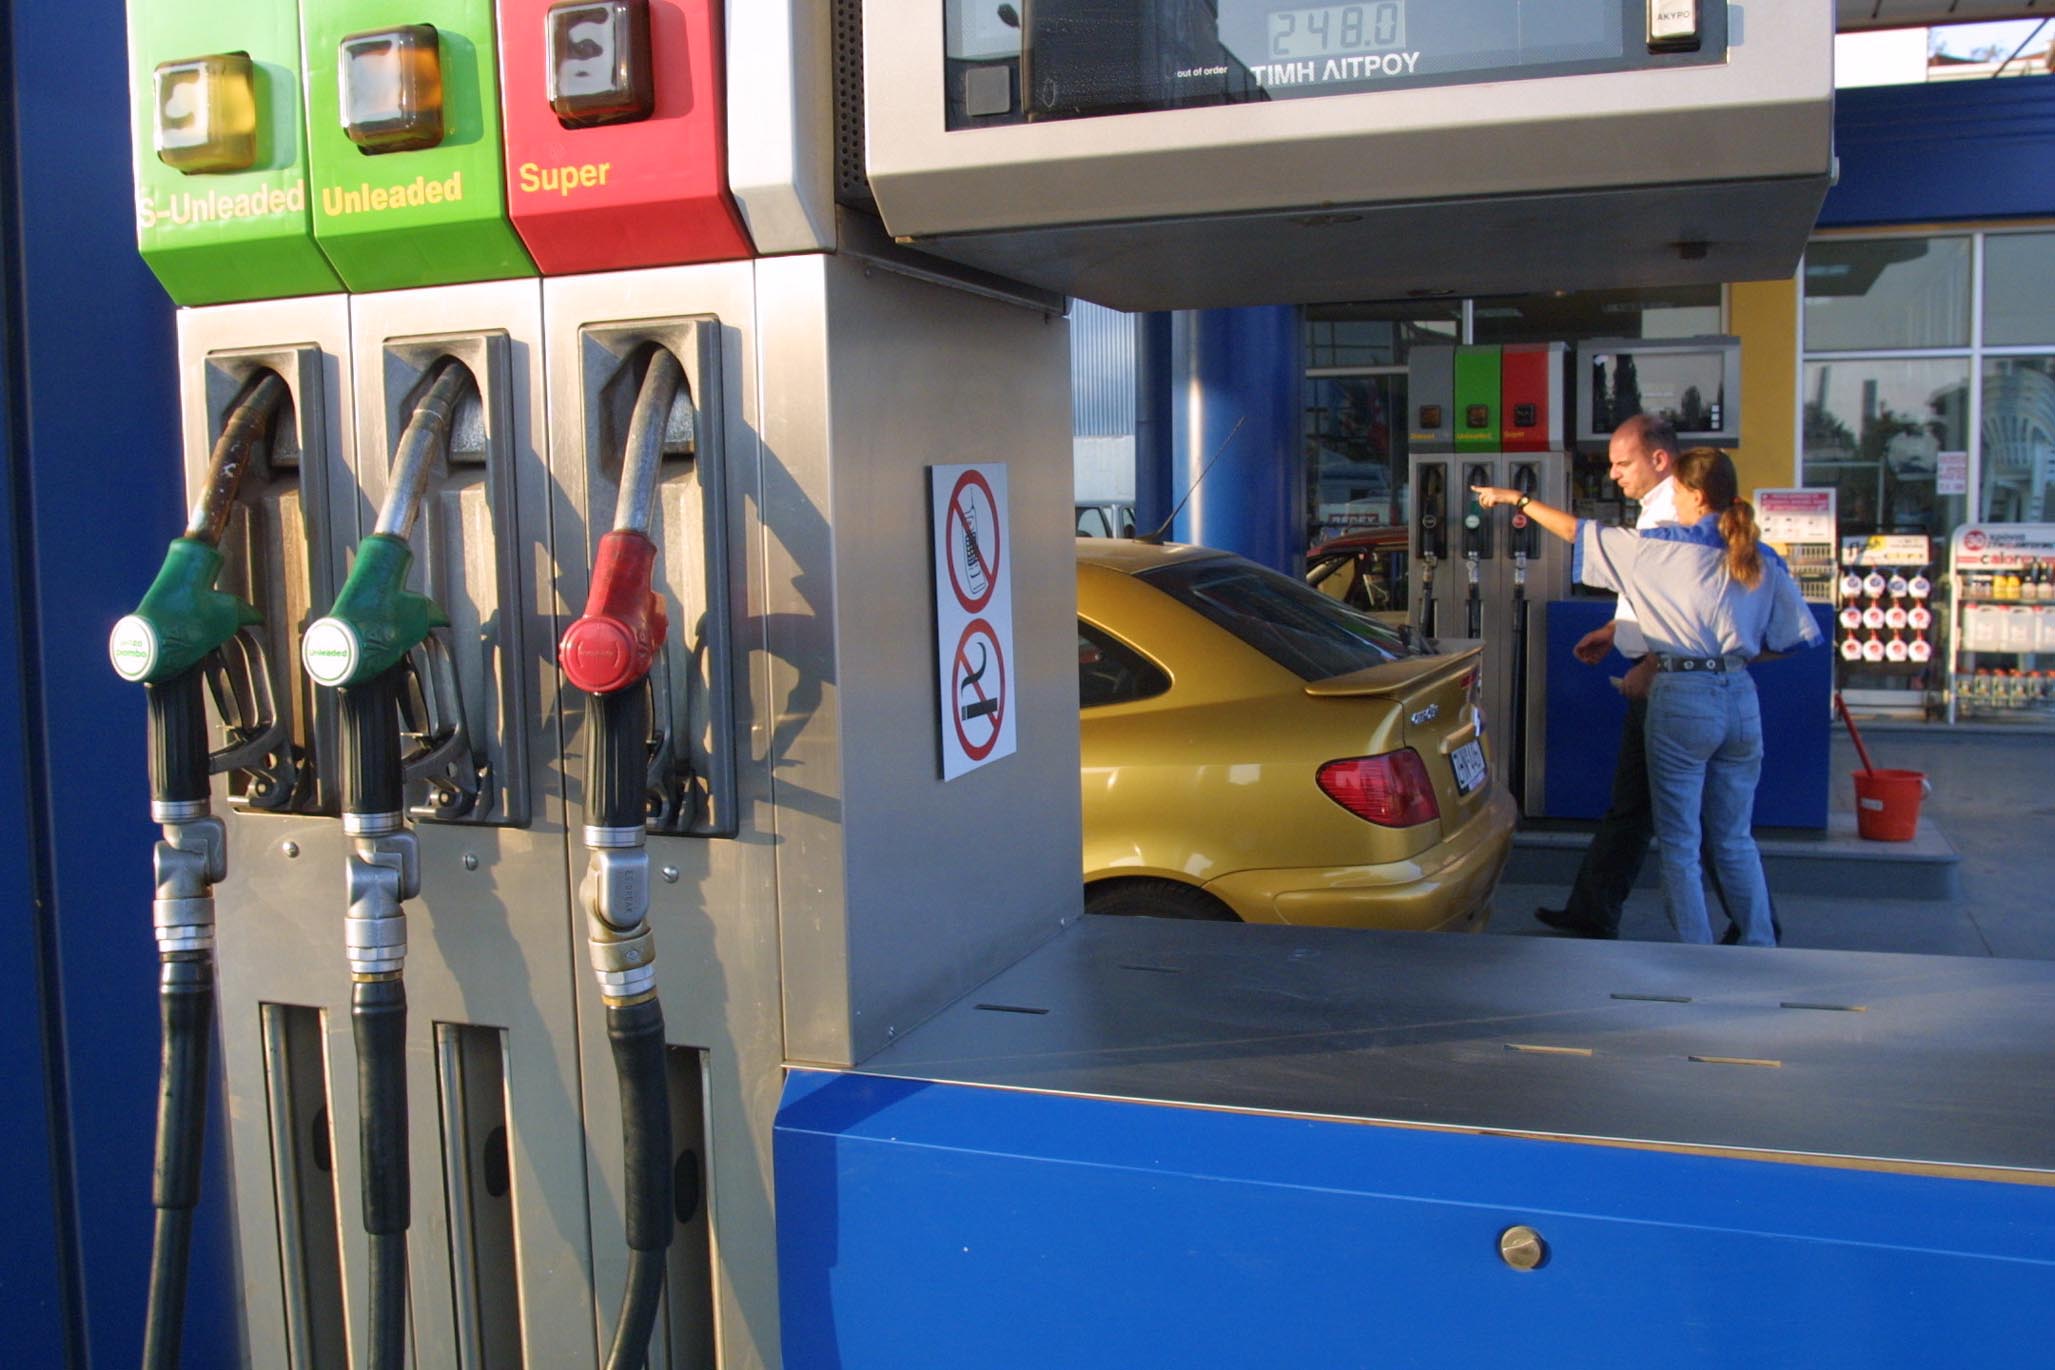 Υπουργείο Ανάπτυξης: Σε χαμηλό 4ετίας η τιμή της αμόλυβδης βενζίνης